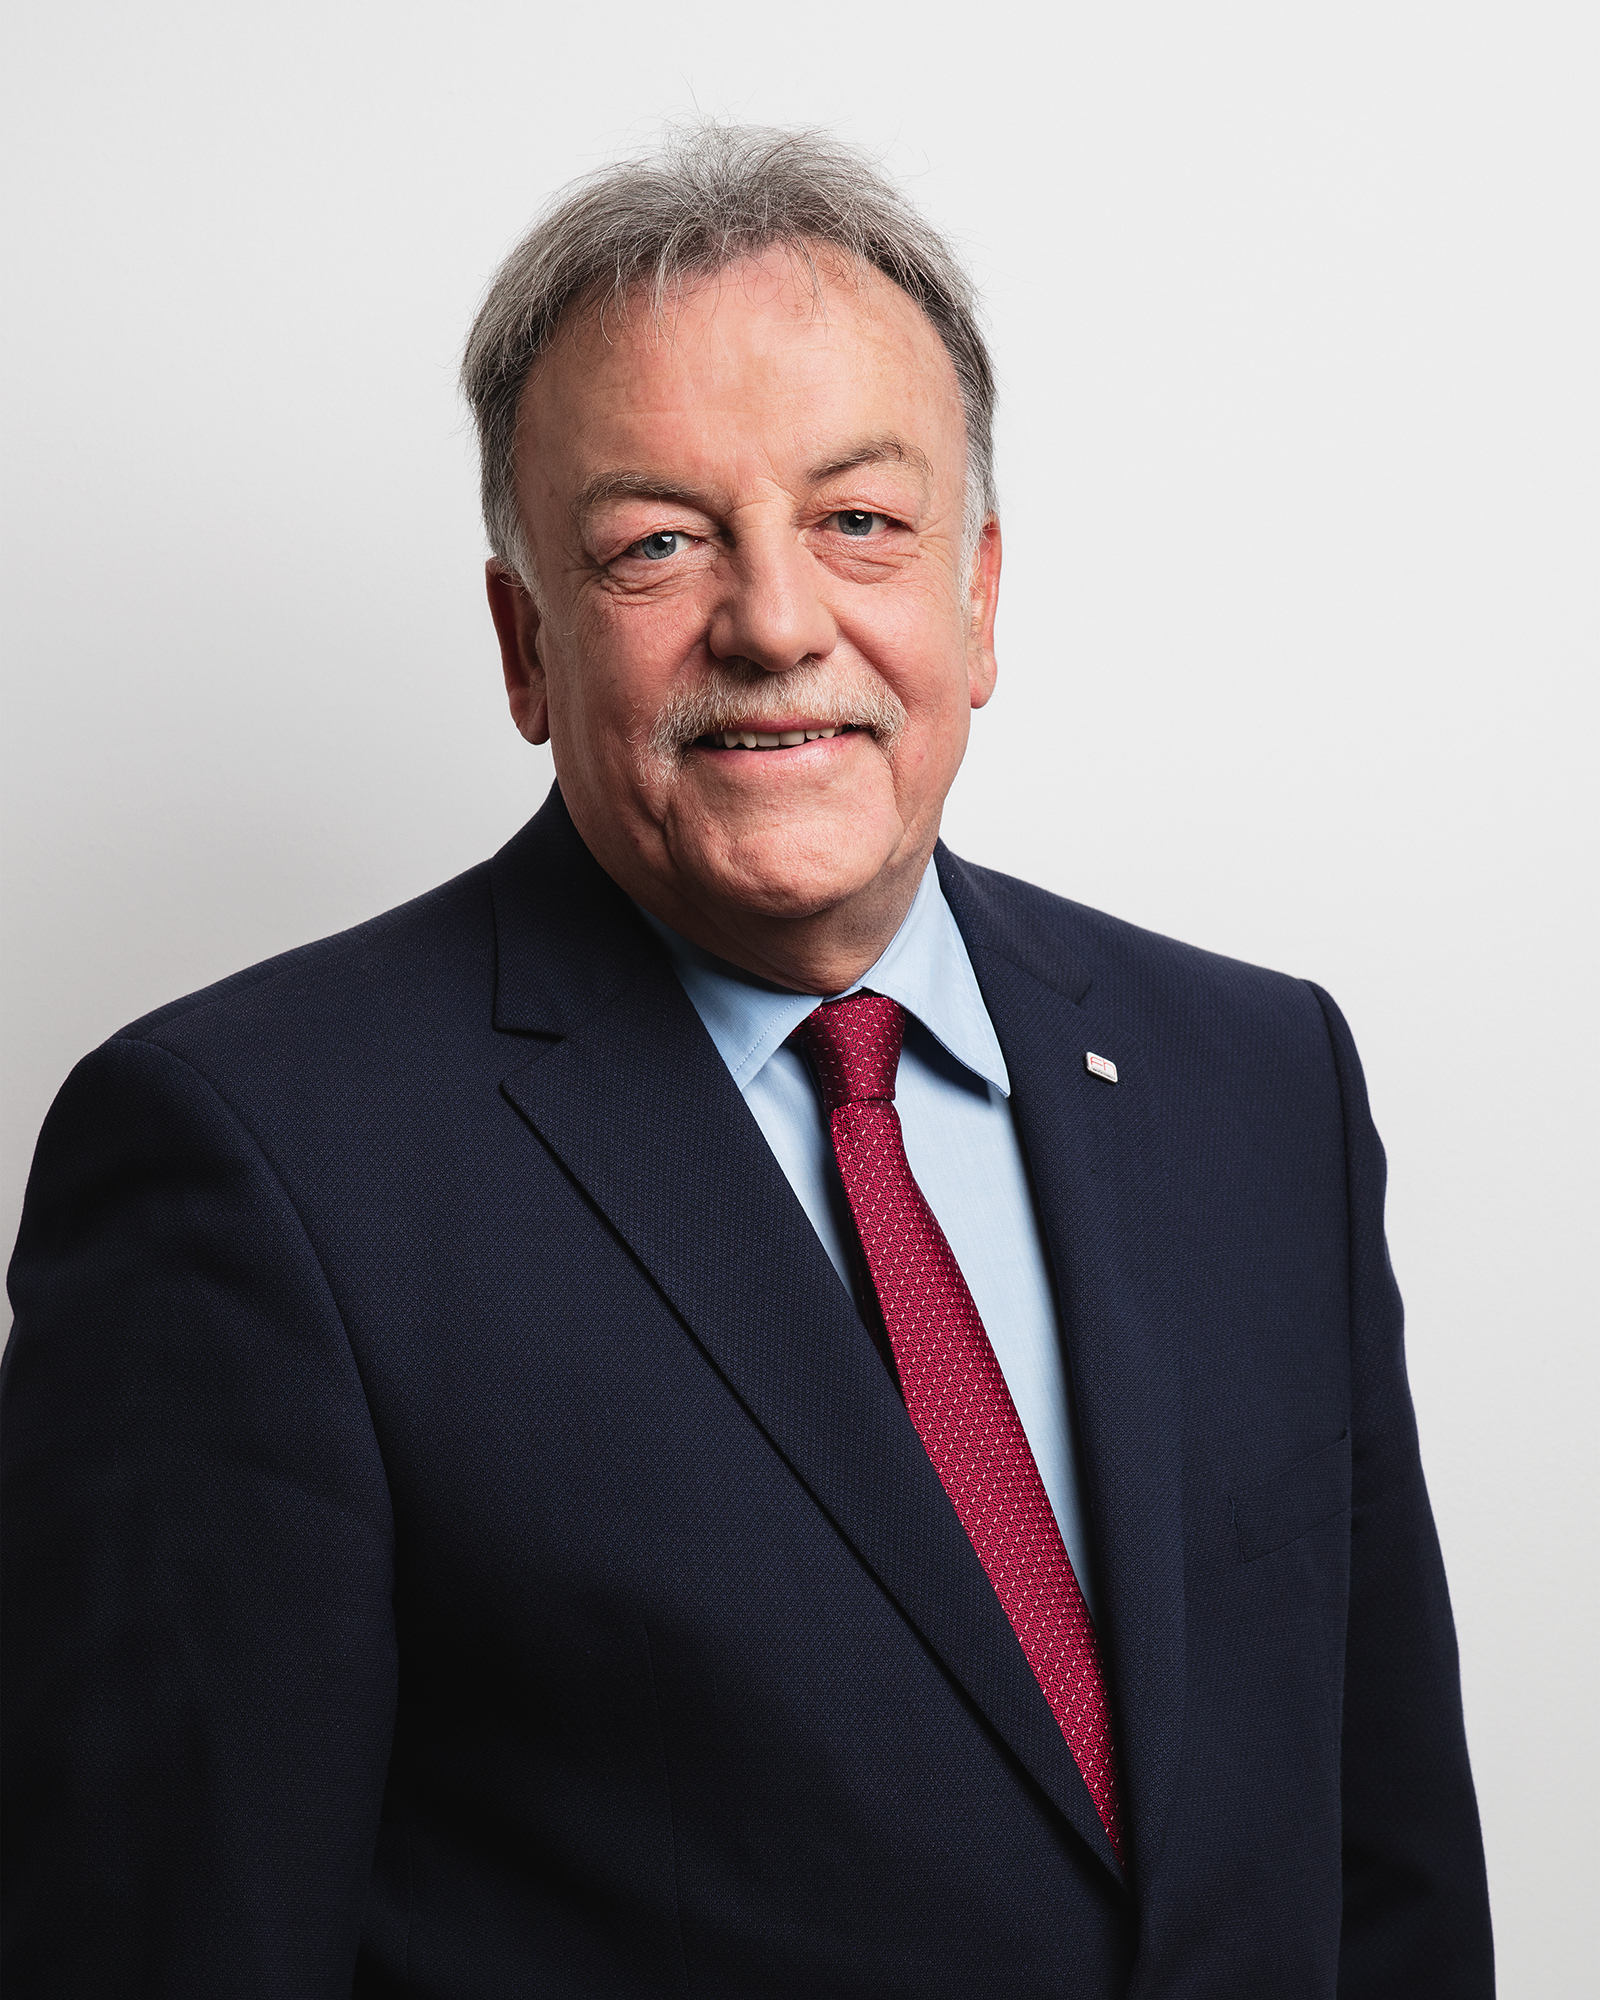 Dr. Gerald Reisinger
Hochschulpräsident und Geschäftsführer der FH Oberösterreich seit 2004